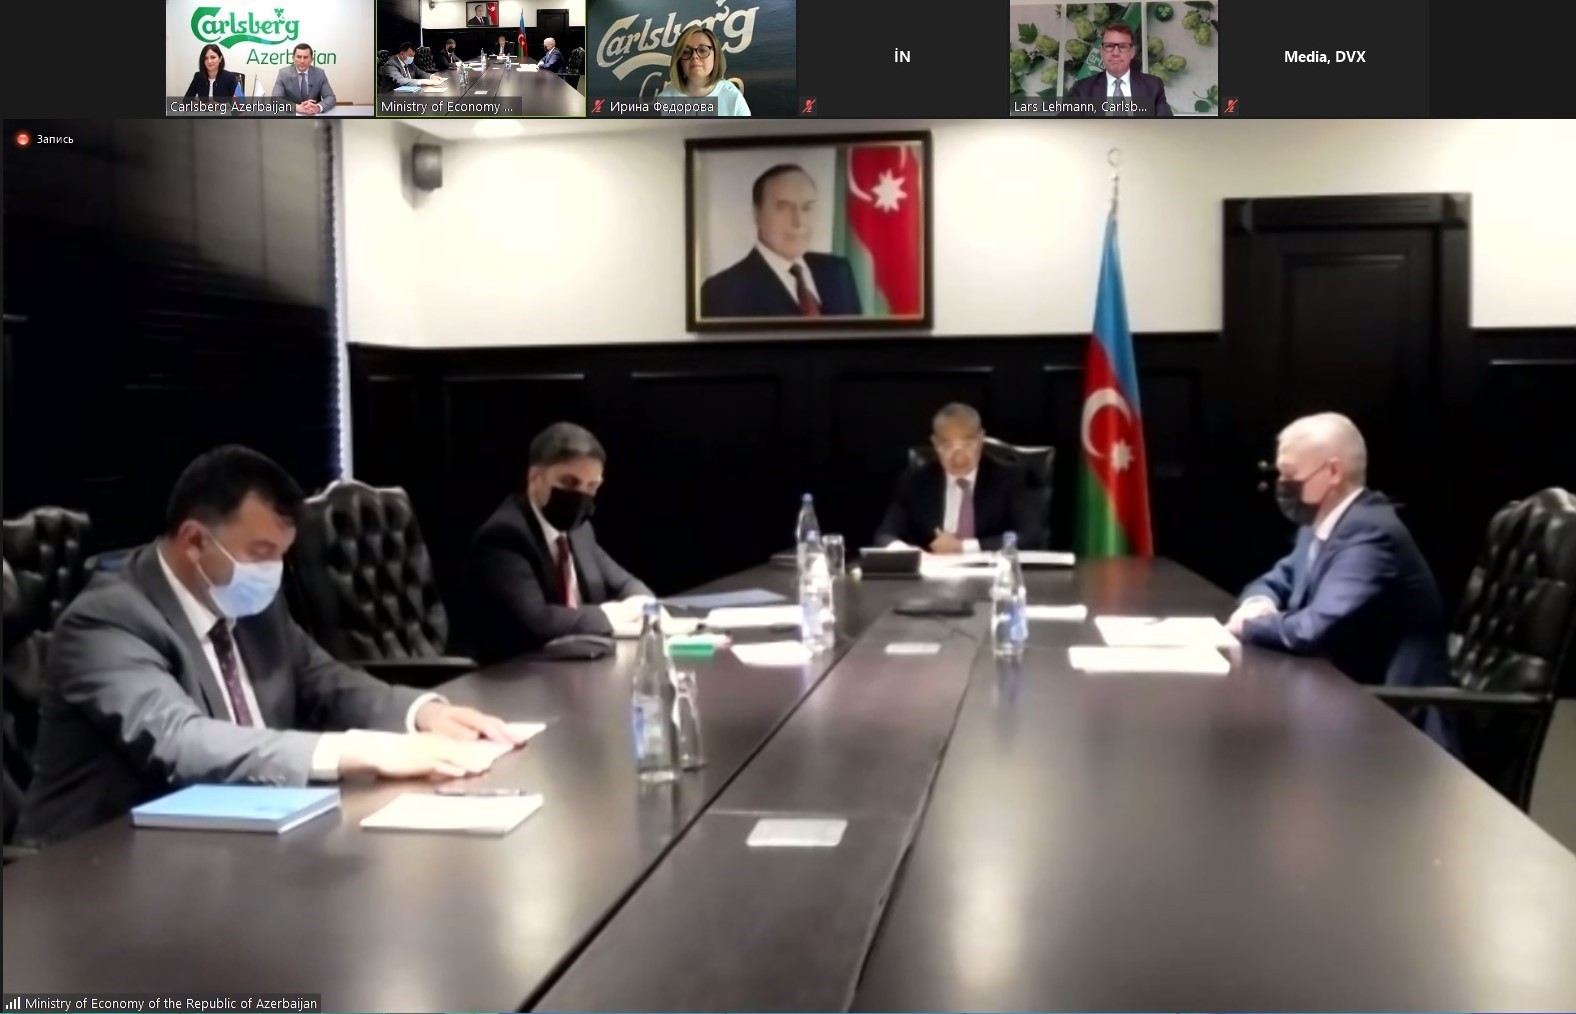 İqtisadiyyat Nazirliyi və “Carlsberg Azerbaijan” arasında Anlaşma Memorandumu imzalanıb